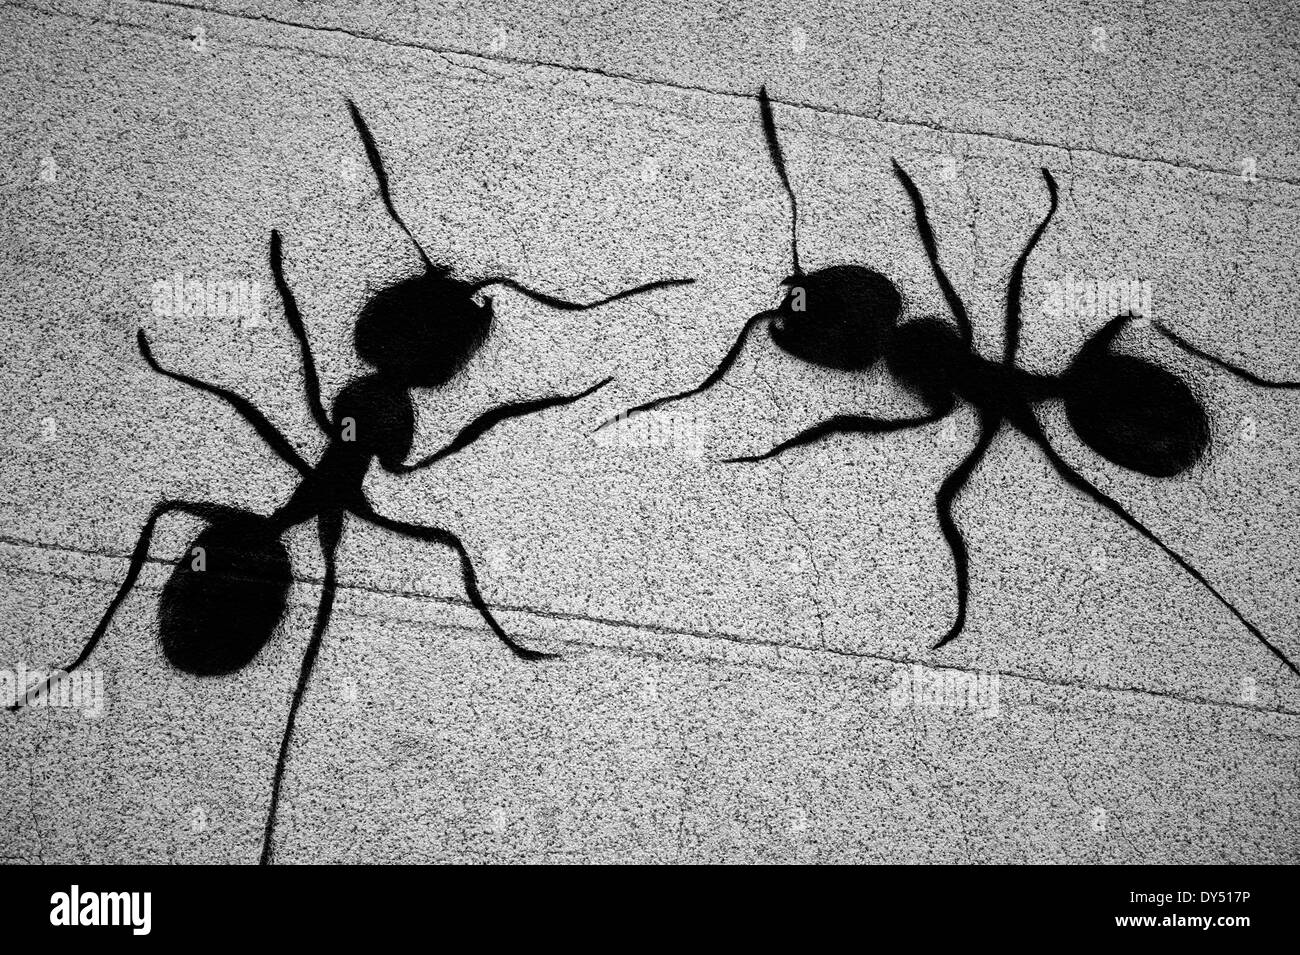 Hormigas Imágenes de stock en blanco y negro - Alamy